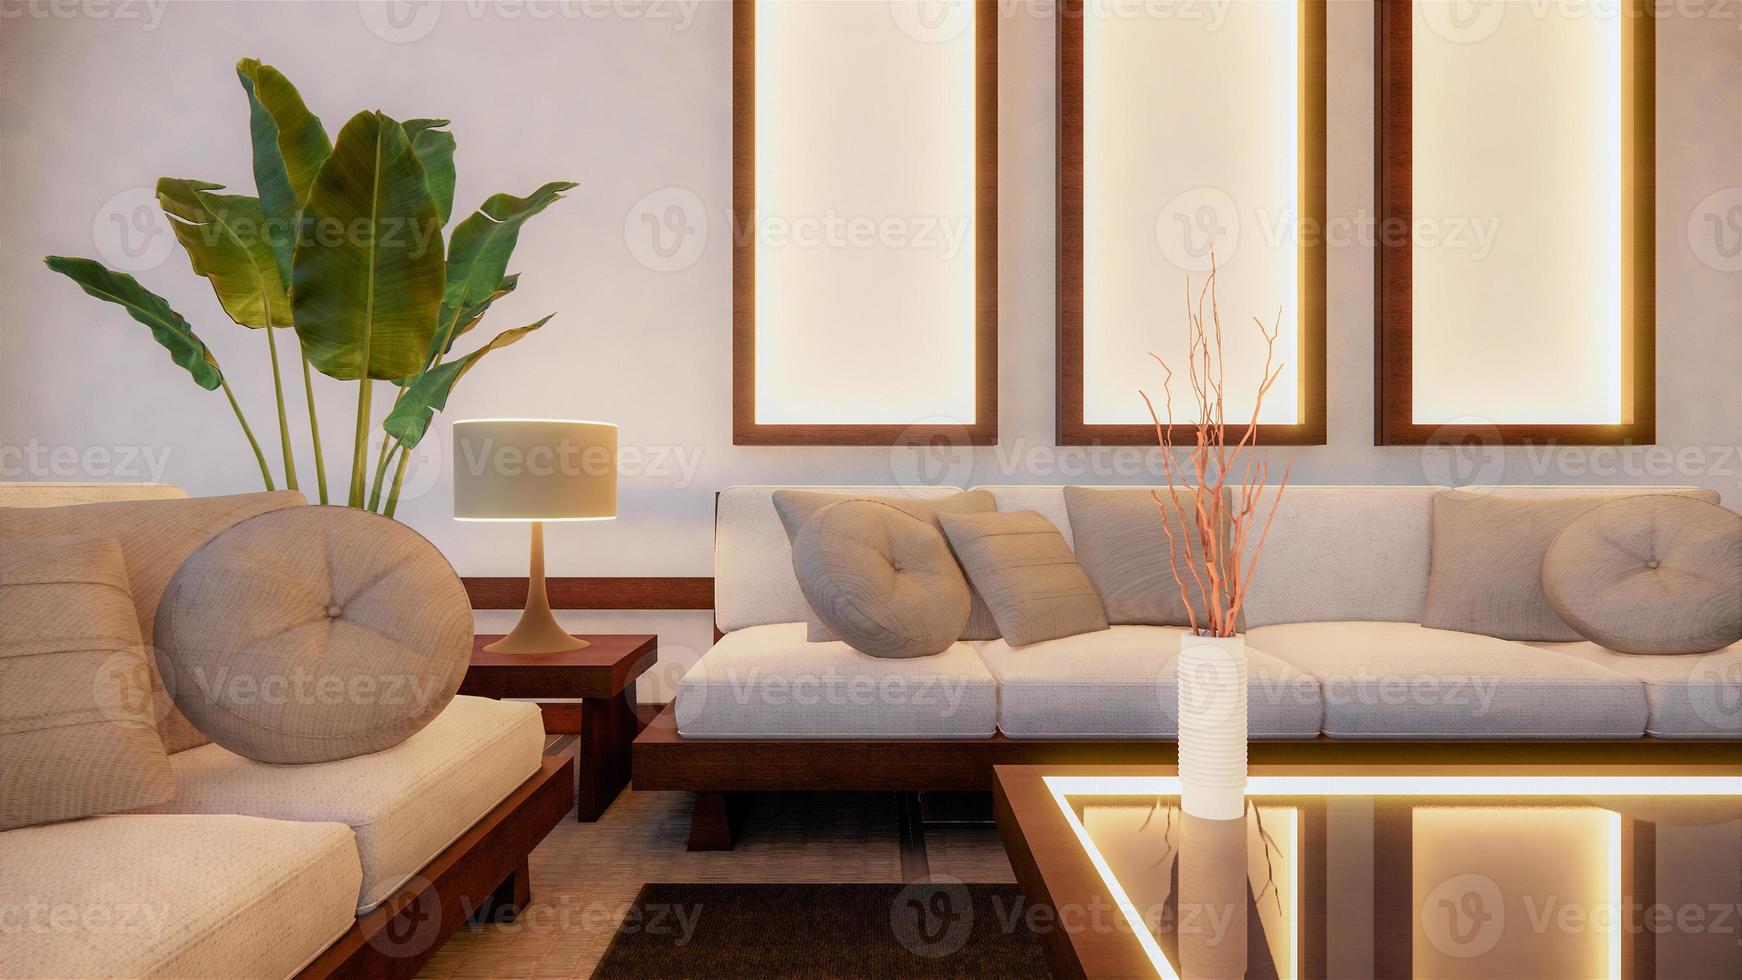 divano in stile giapponese sulla stanza giappone e lo sfondo bianco fornisce una finestra per l'editing.3d rendering foto